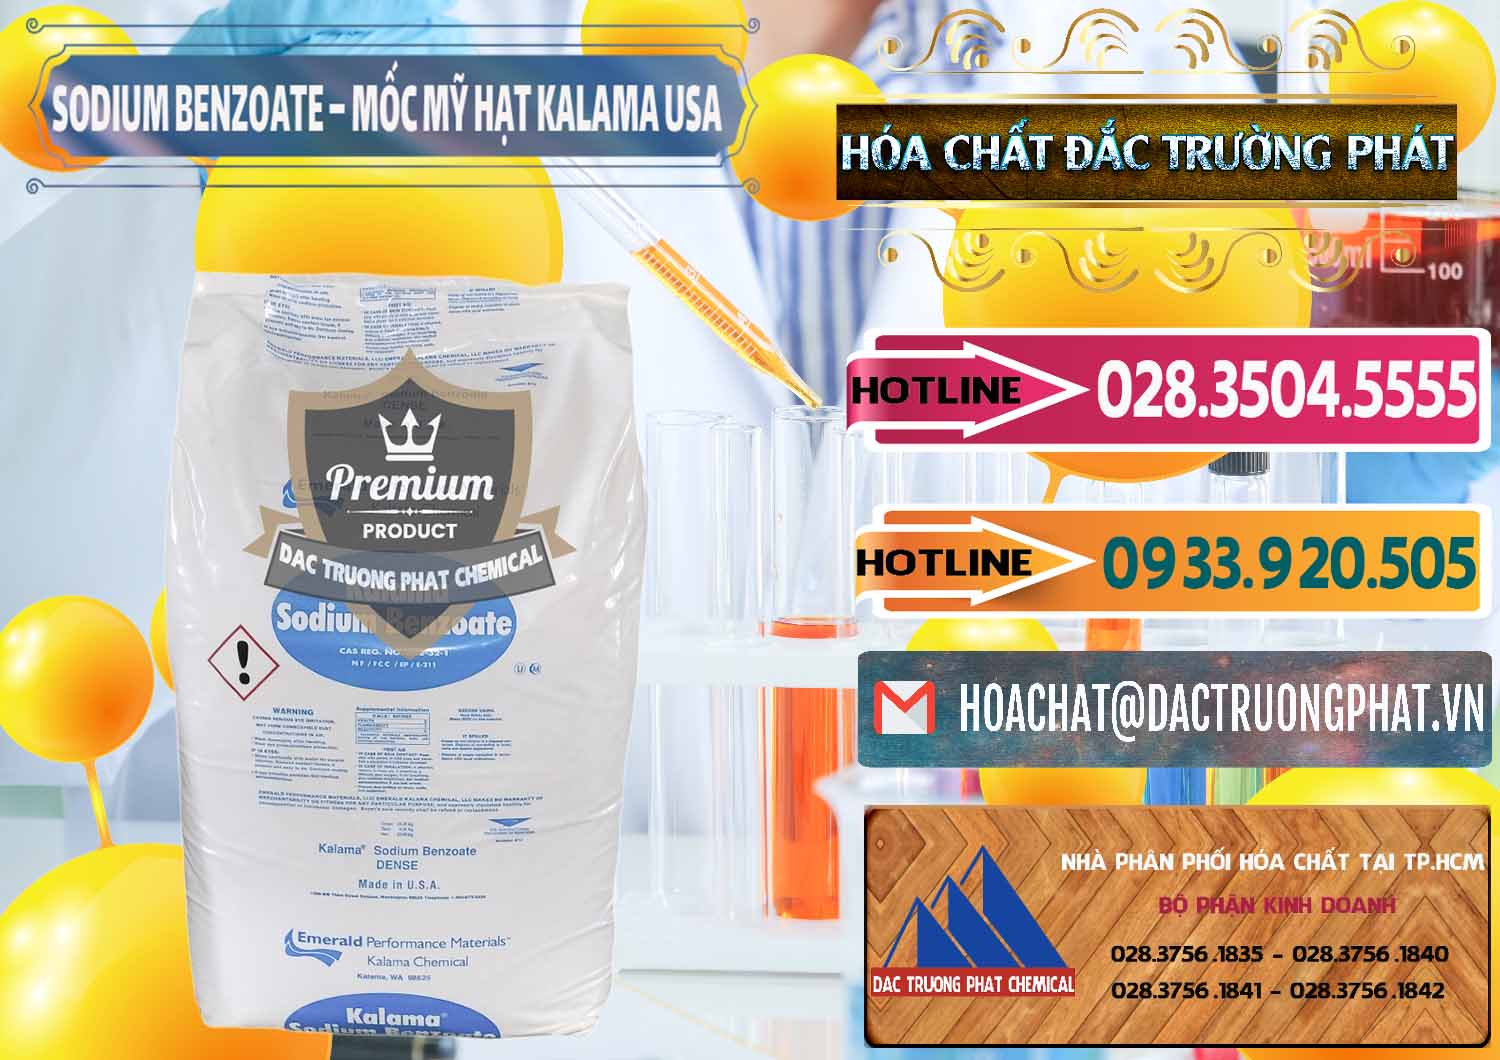 Cty nhập khẩu - bán Sodium Benzoate - Mốc Hạt Kalama Food Grade Mỹ Usa - 0137 - Cty chuyên cung ứng & phân phối hóa chất tại TP.HCM - dactruongphat.vn